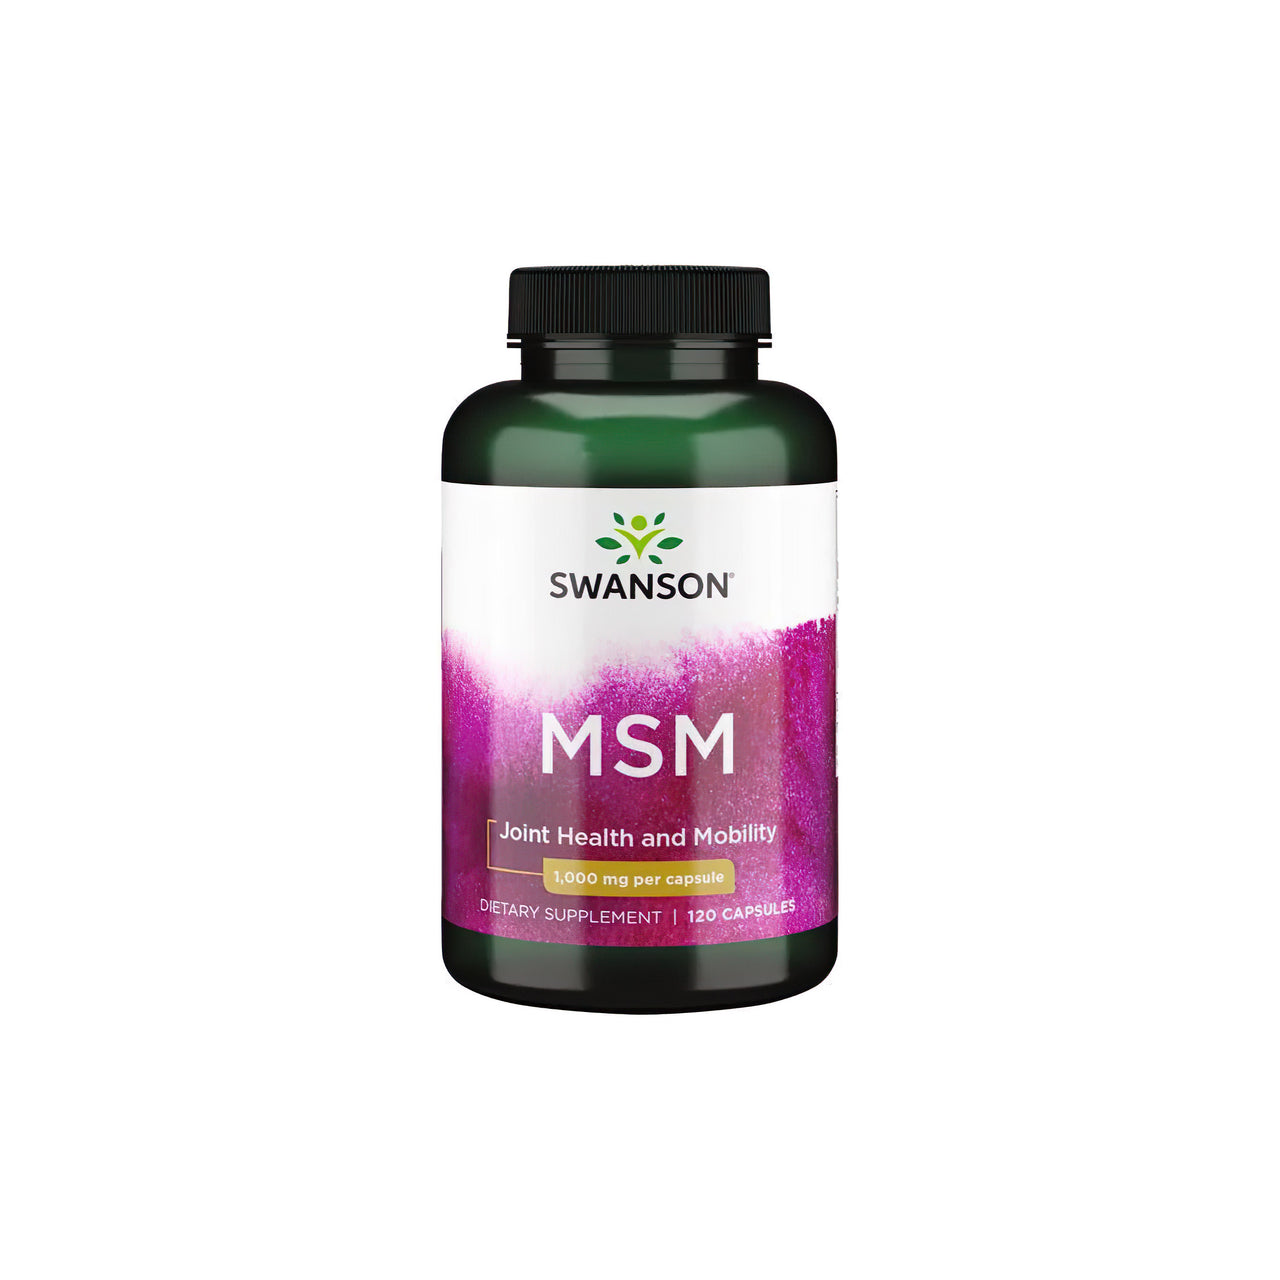 Une bouteille de Swanson MSM 1000 mg 120 gélules, spécifiquement formulée pour la santé des articulations et des tissus conjonctifs, présentée sur un fond blanc net.